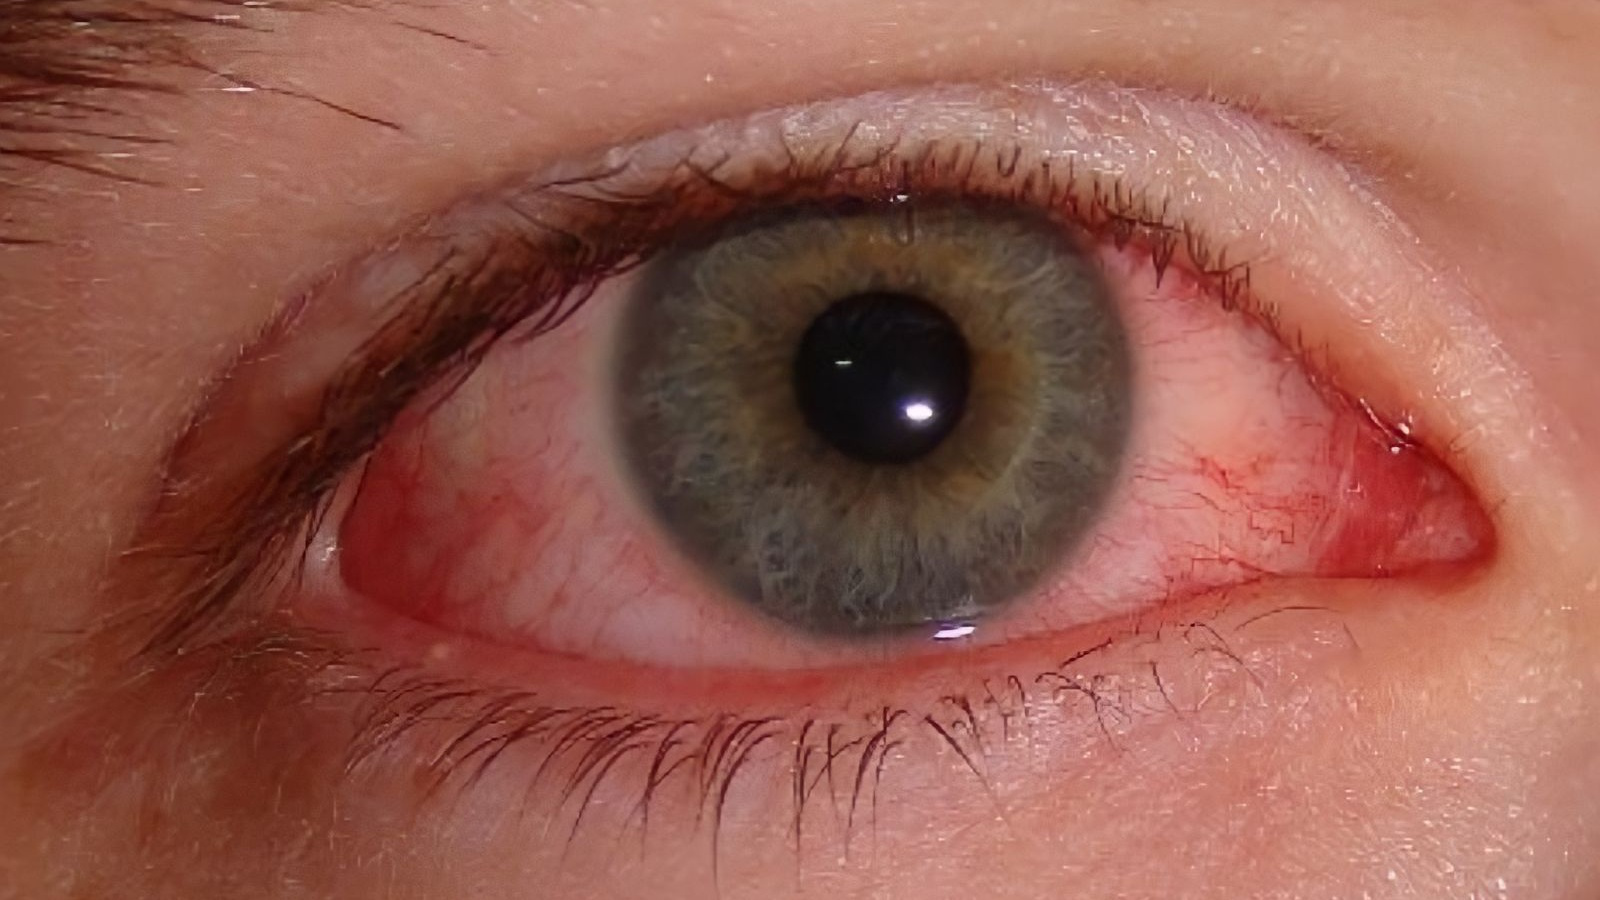 Các biện pháp điều trị mắt nổi gân đỏ hiệu quả?
